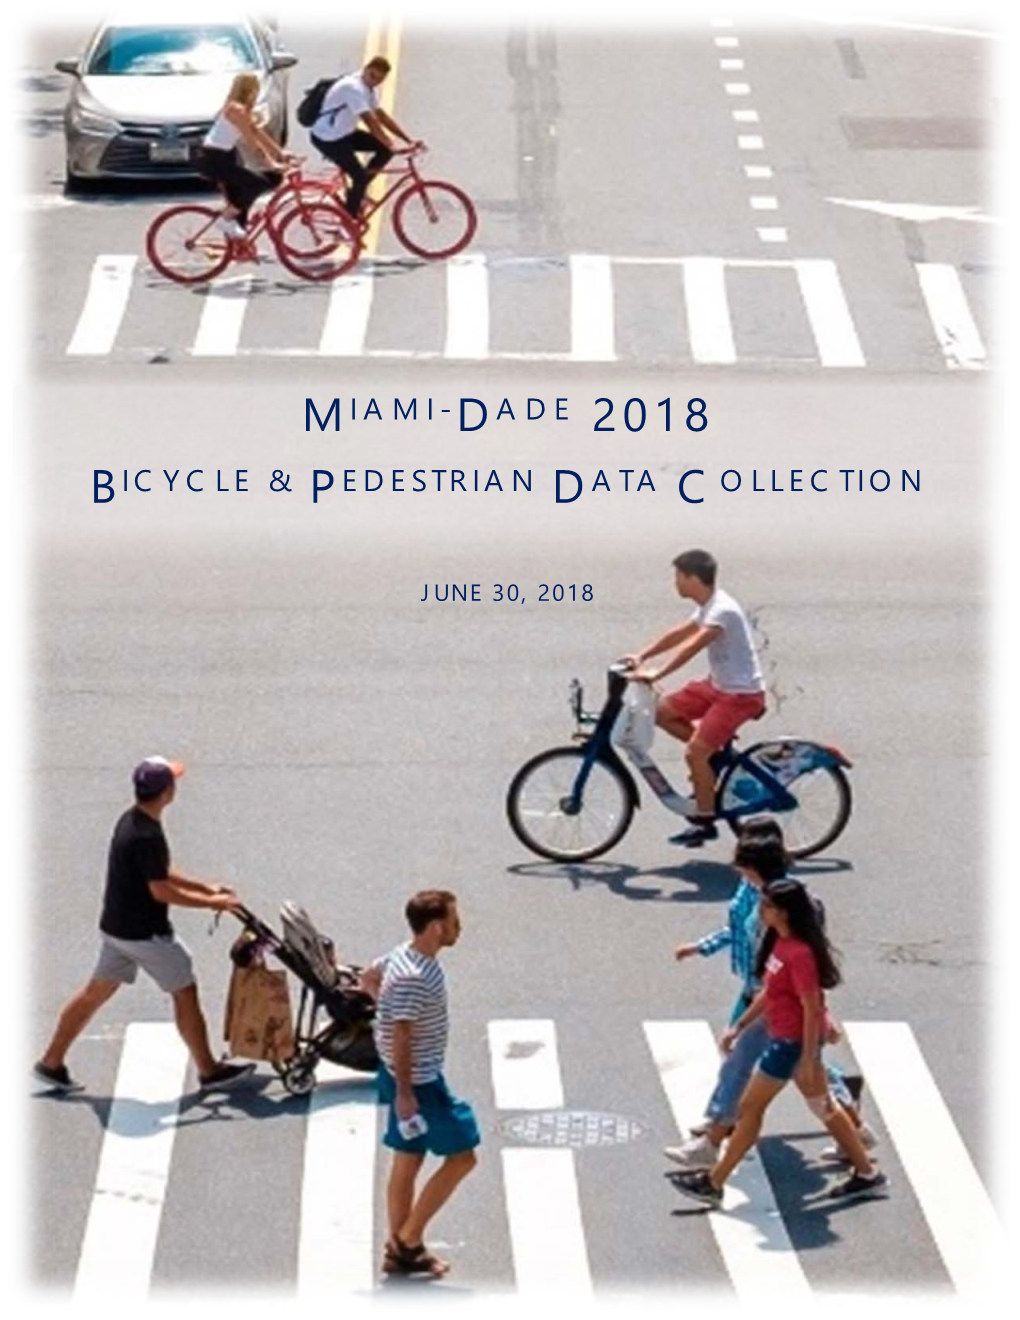 Dade 2018 Bicycle & Pedestrian Data Collection